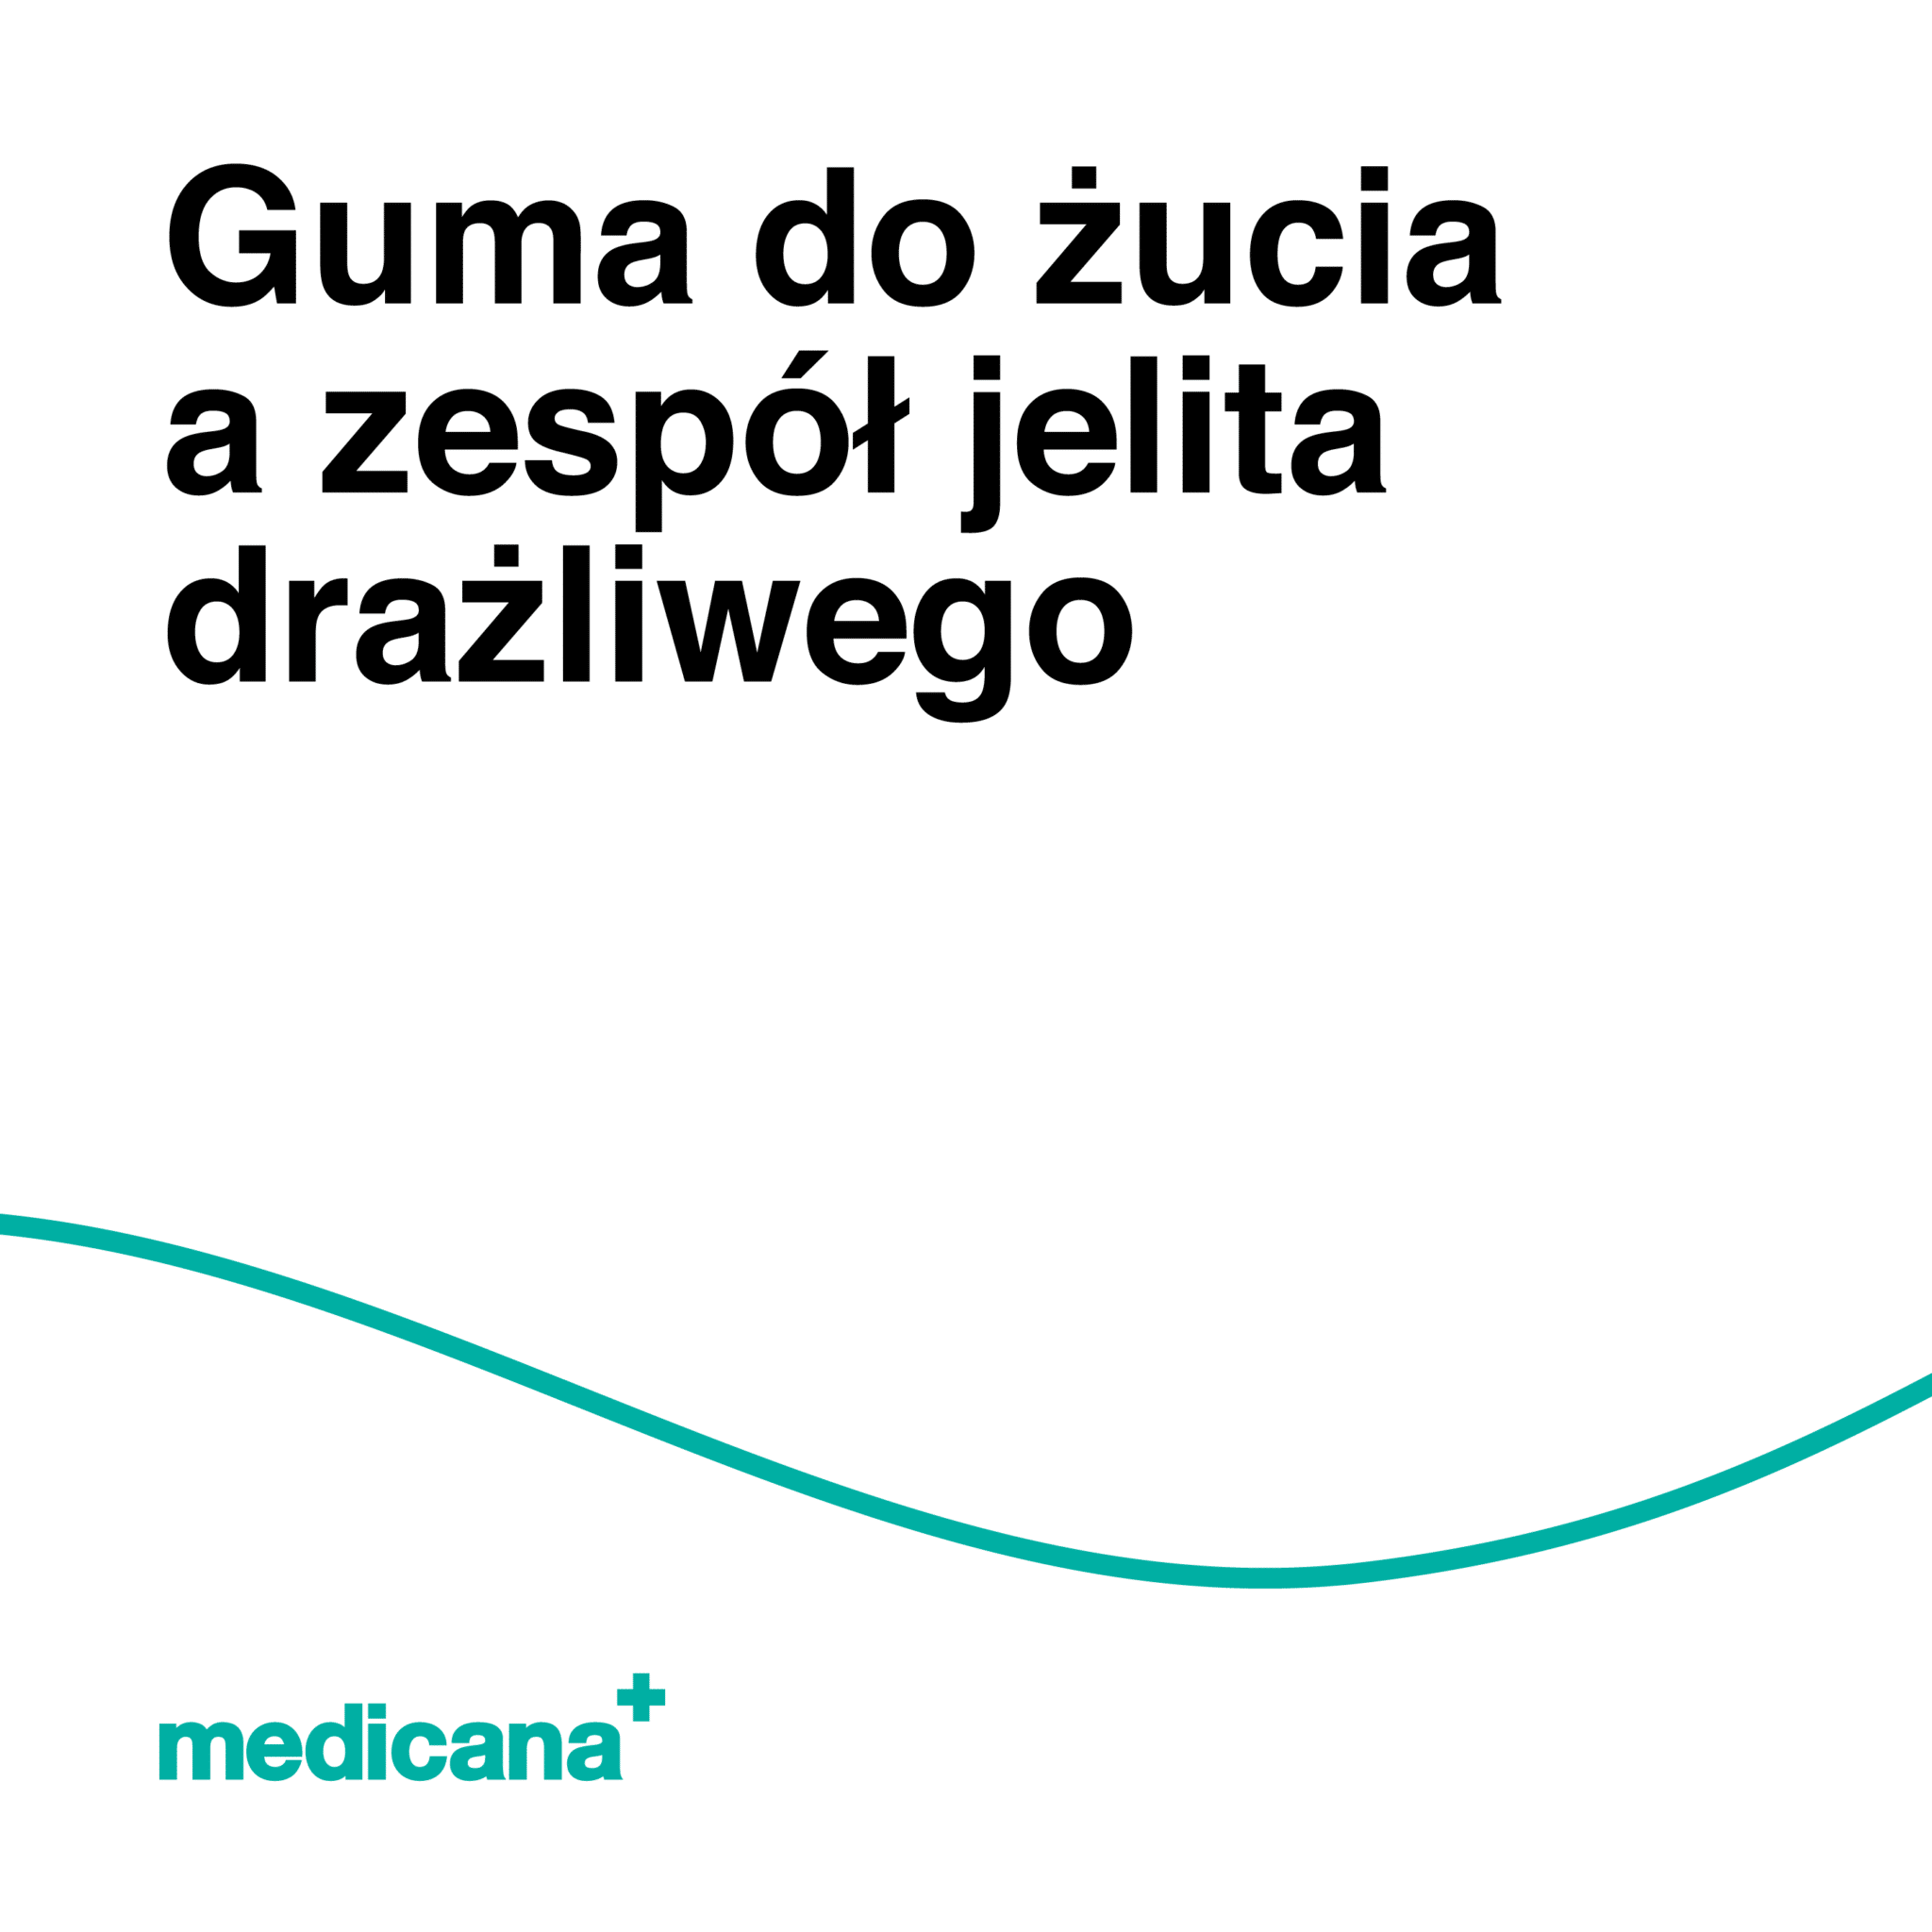 Grafika, białe tło z zieloną linią, czarnym napisem Guma do żucia a zespół jelita drażliwego i logo Medicana Centrum Terapii Medyczna Marihuana w lewym dolnym rogu.